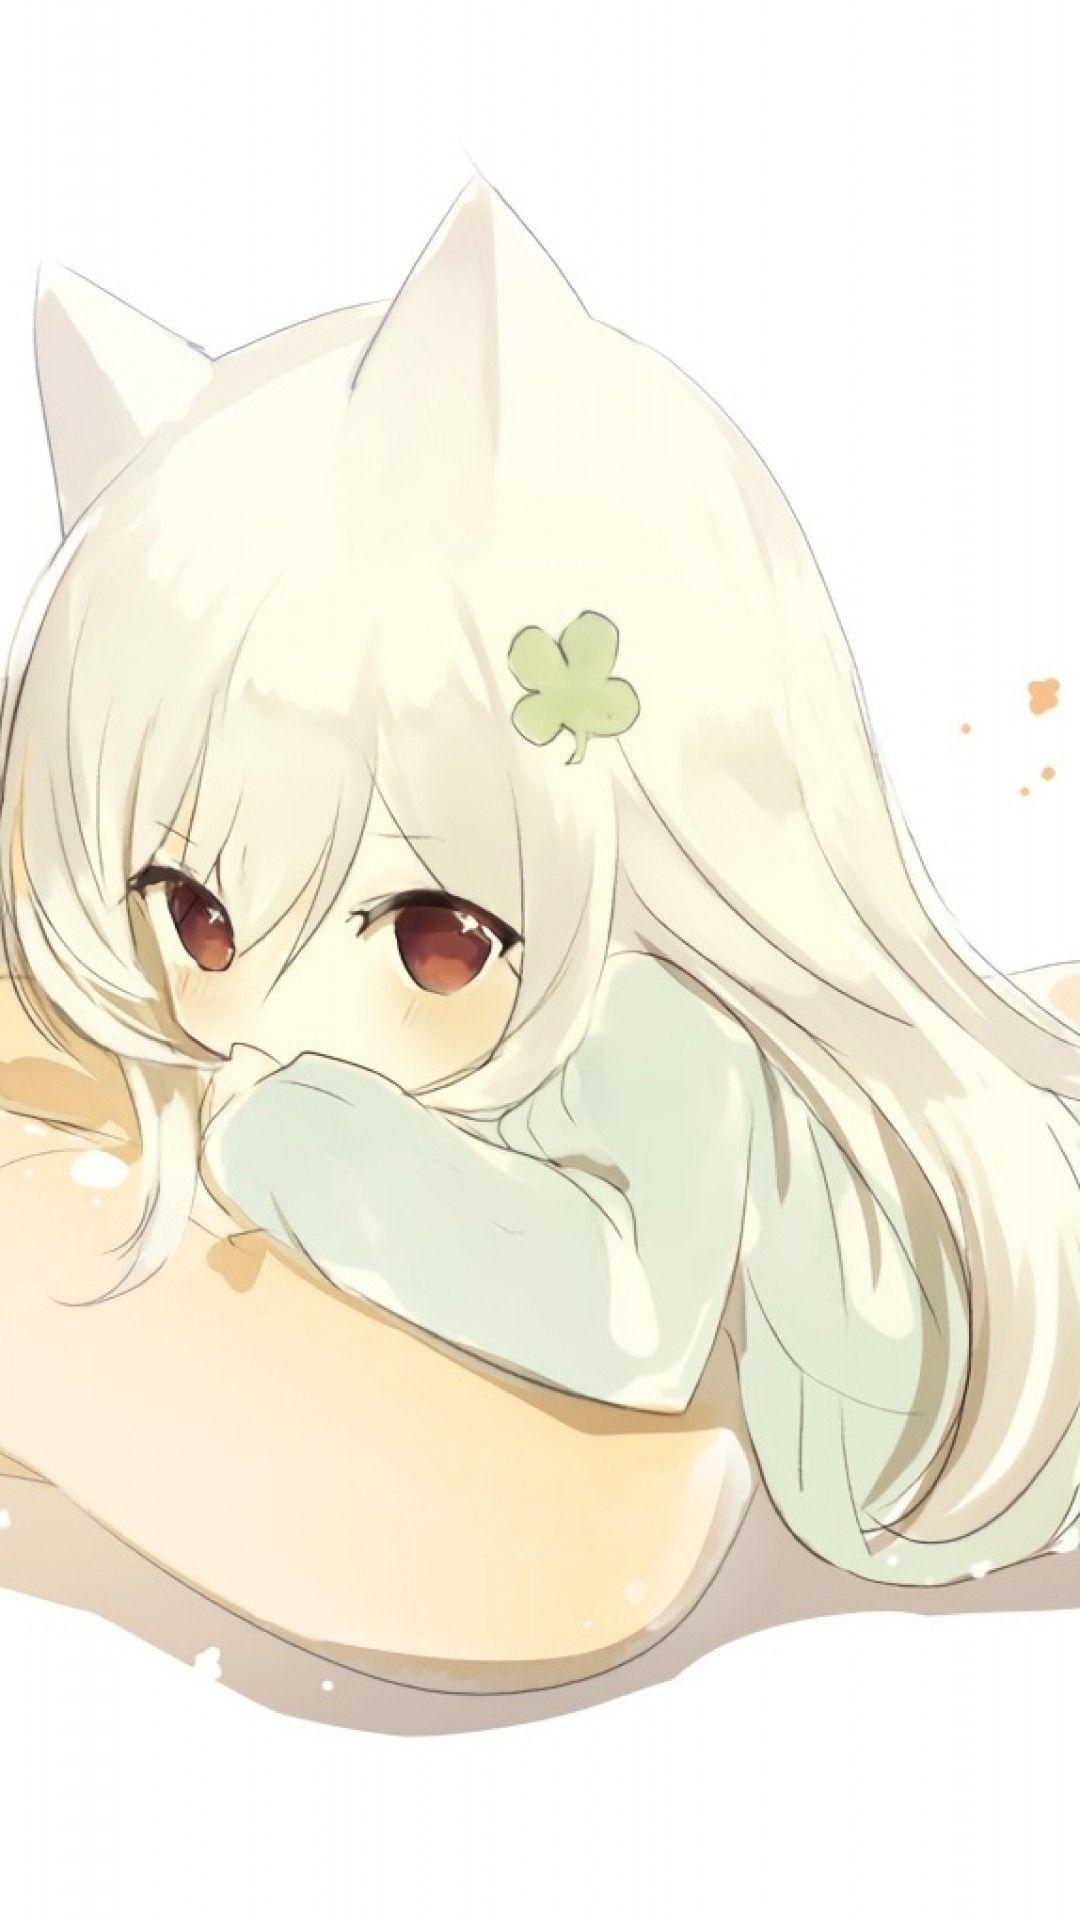 Cute Chibi Anime Girl Wallpapers - Top Hình Ảnh Đẹp